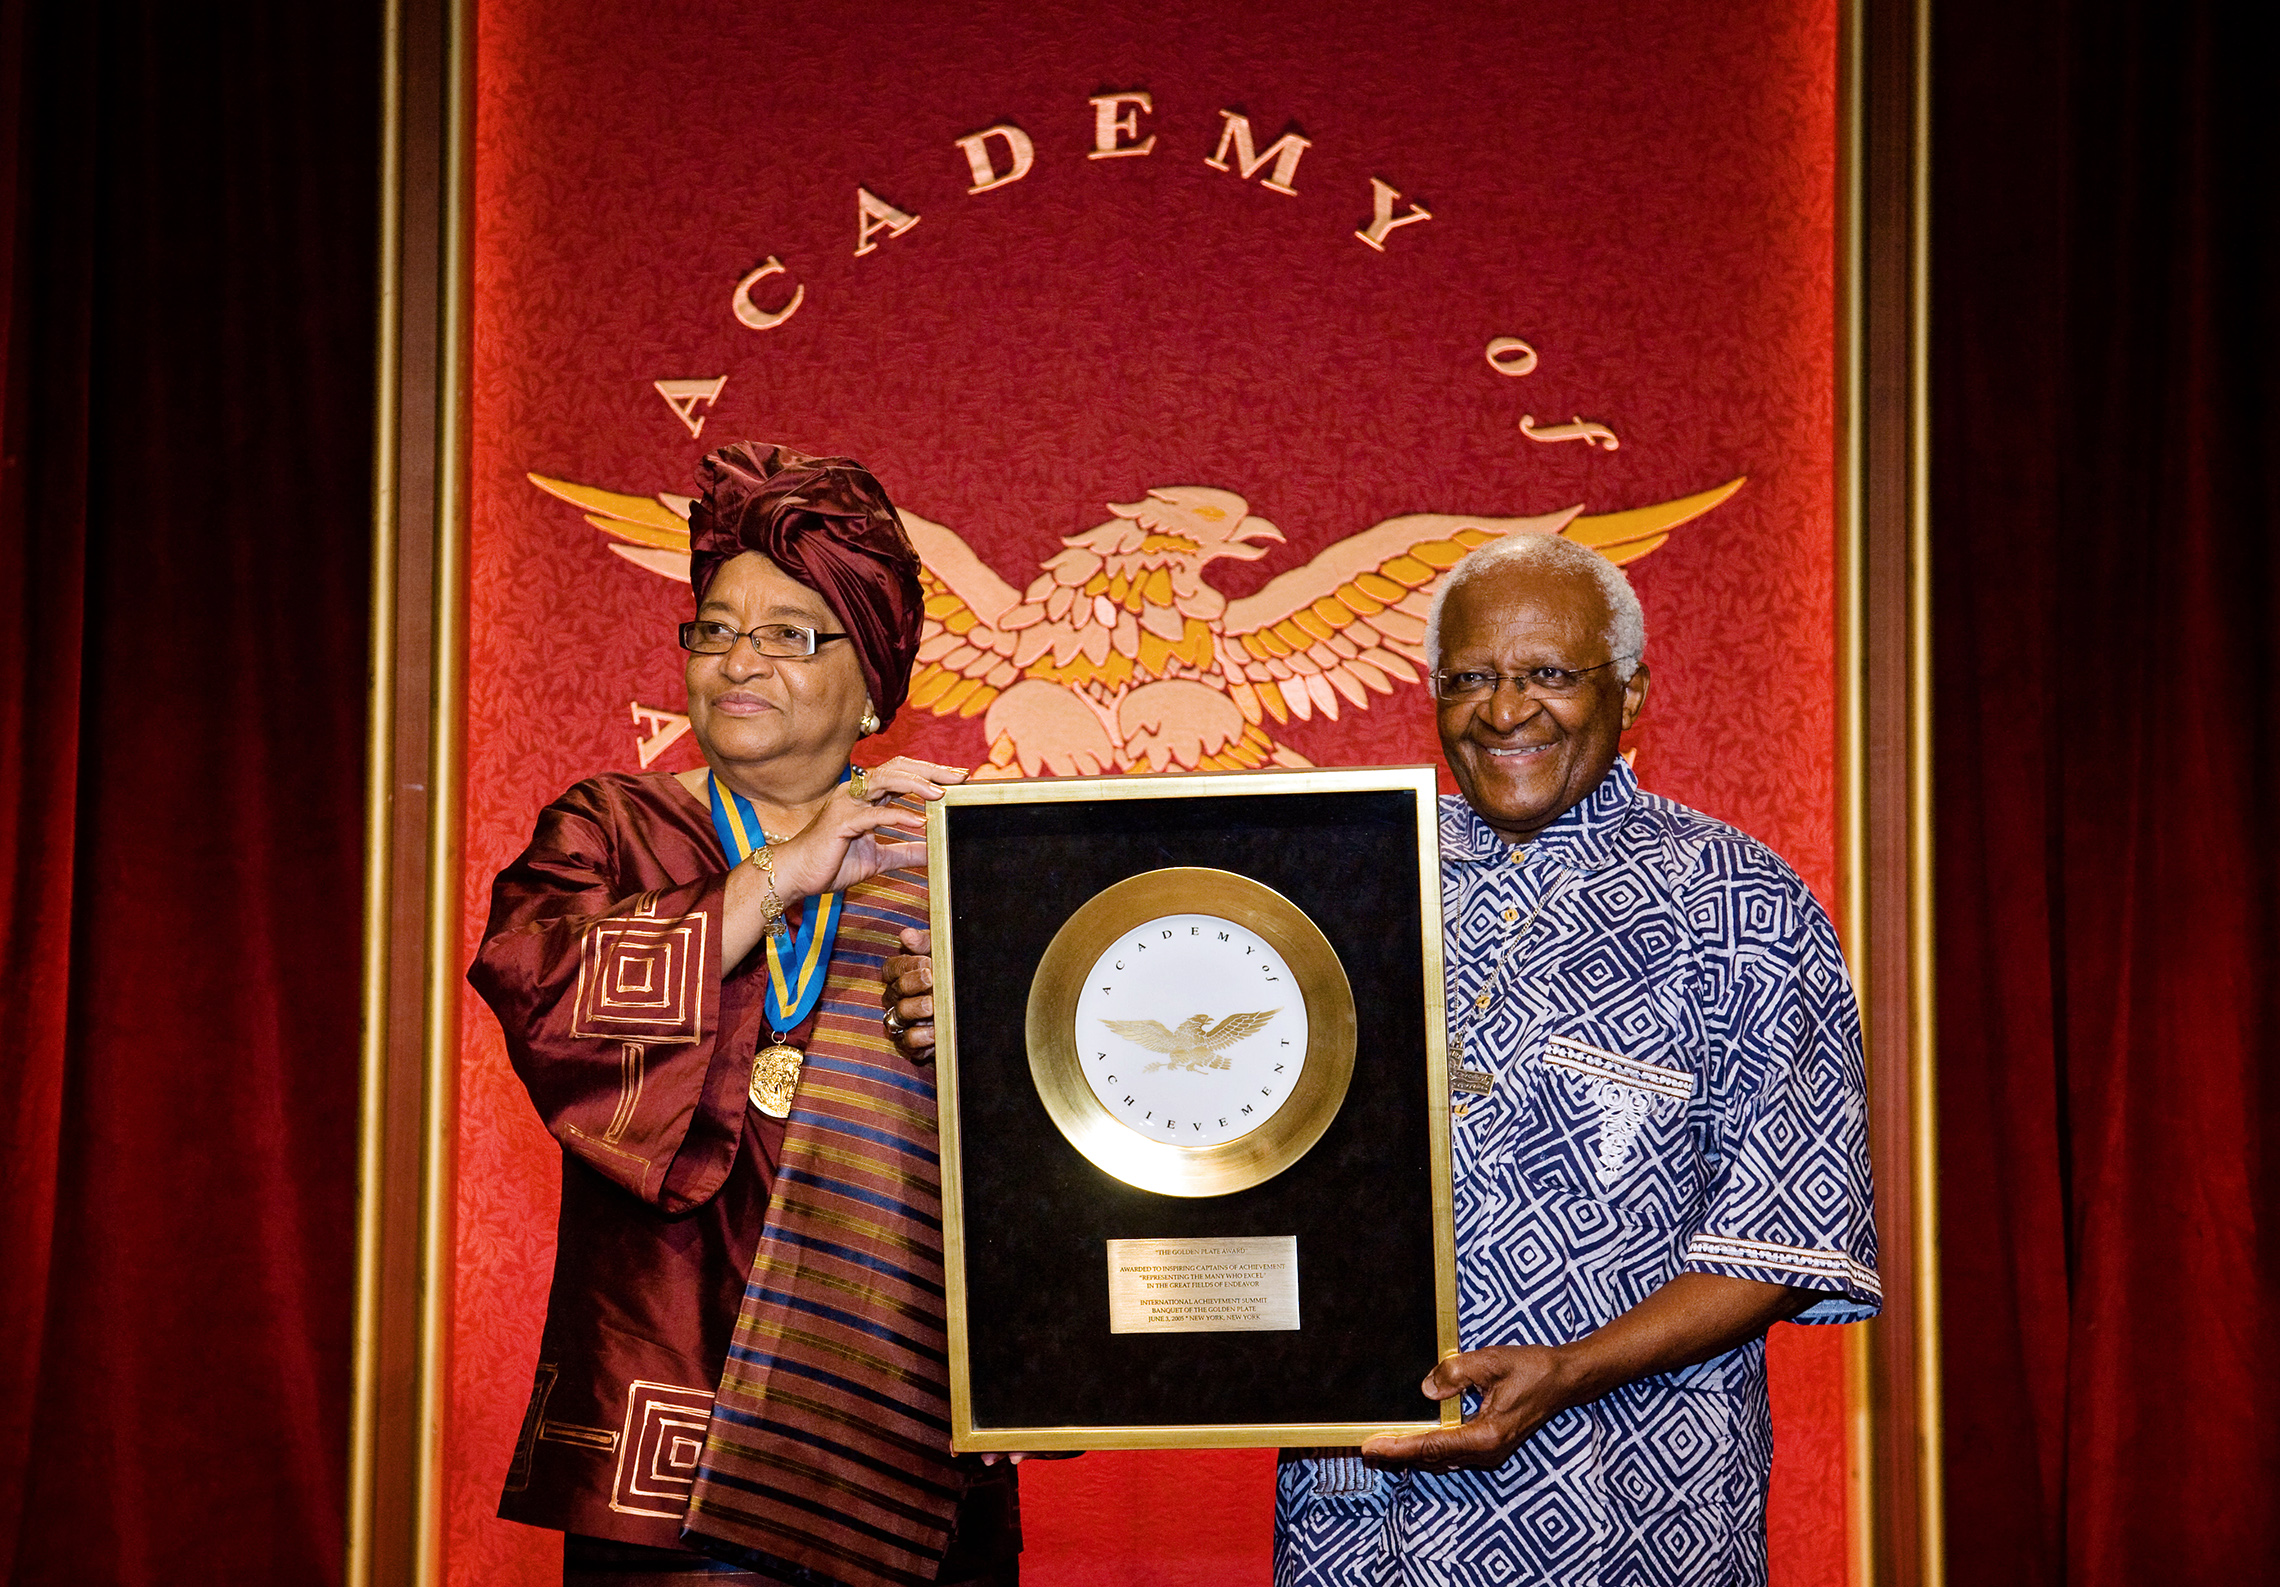 南アフリカのデズモンド-ツツ名誉大司教は、ハワイで開催された2008年国際アチーブメントサミットで、リベリア大統領エレン-ジョンソン-サーリーフにゴールデンプレート賞を授与した。 (©Academy of Achievement)